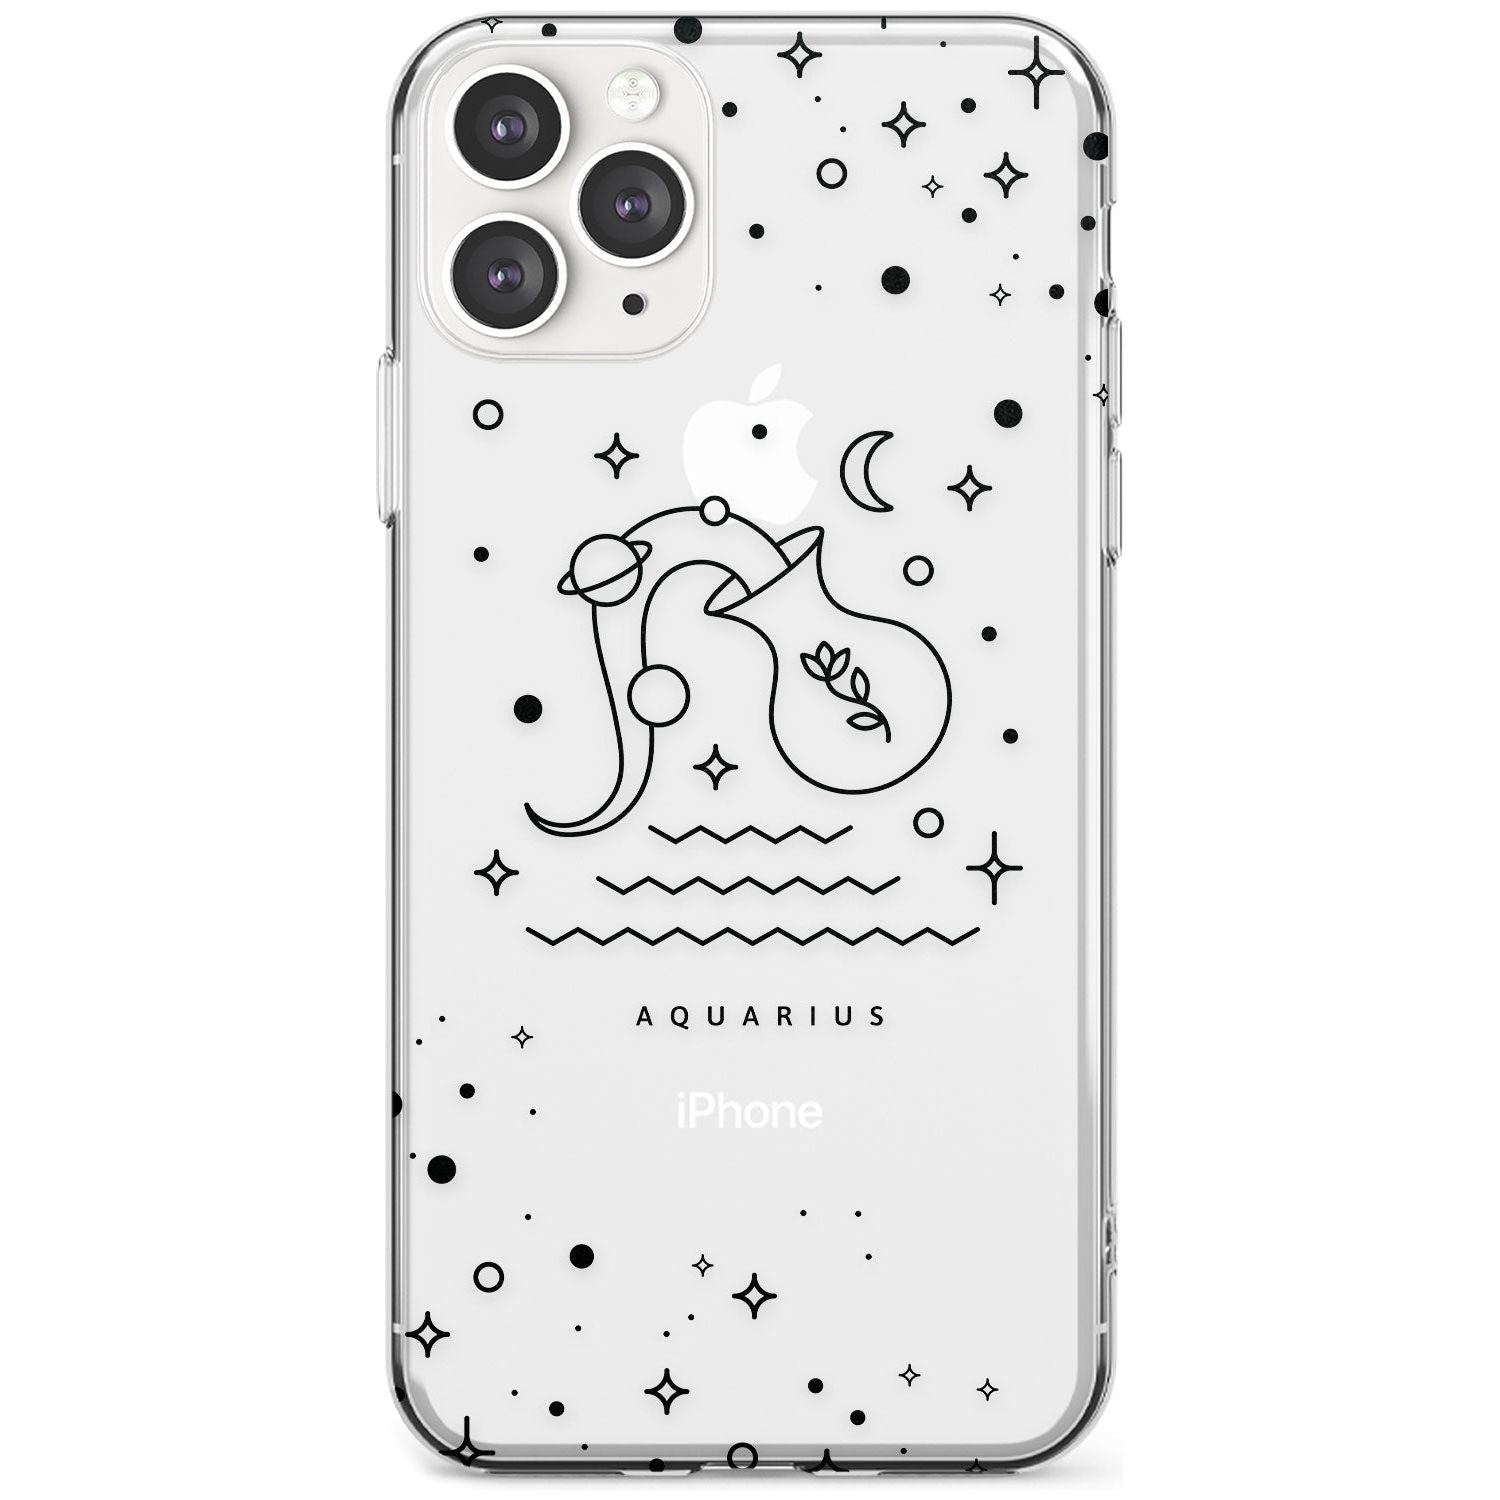 Aquarius Emblem - Transparent Design Slim TPU Phone Case for iPhone 11 Pro Max